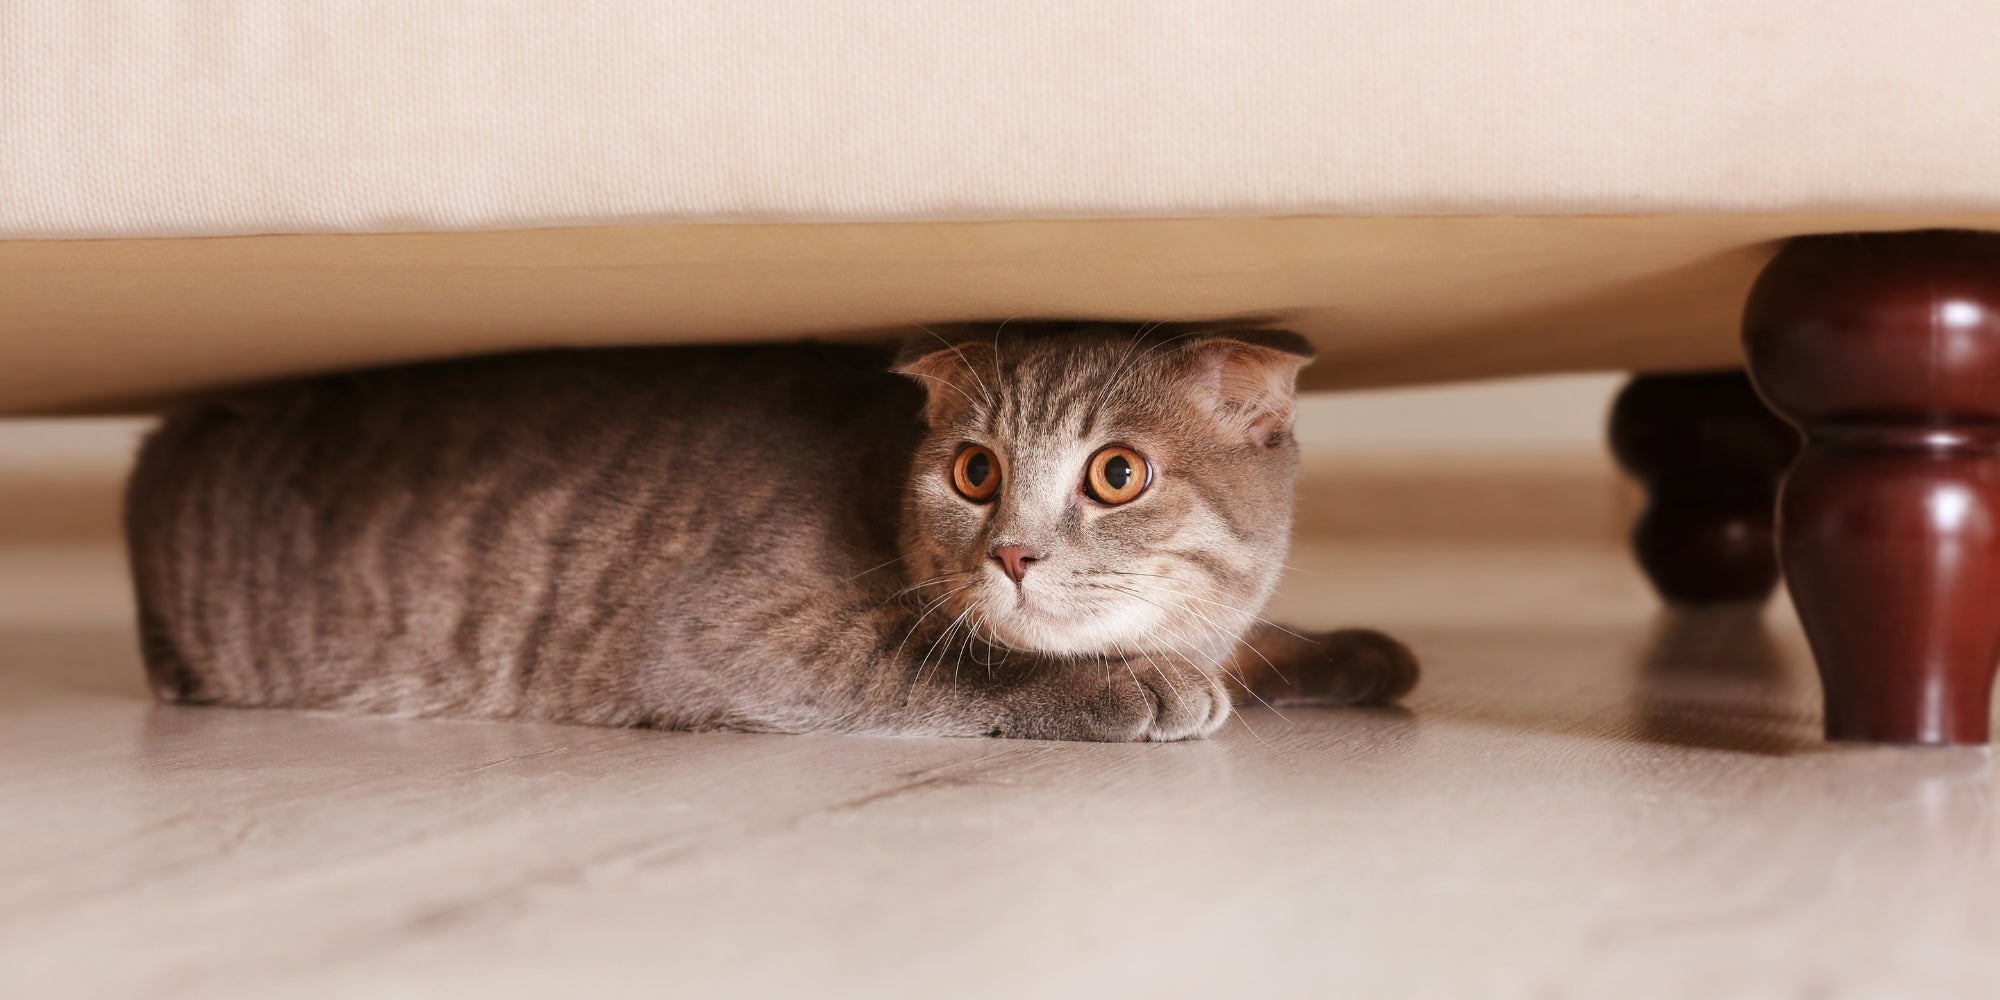 Gato escondiéndose debajo de un mueble.